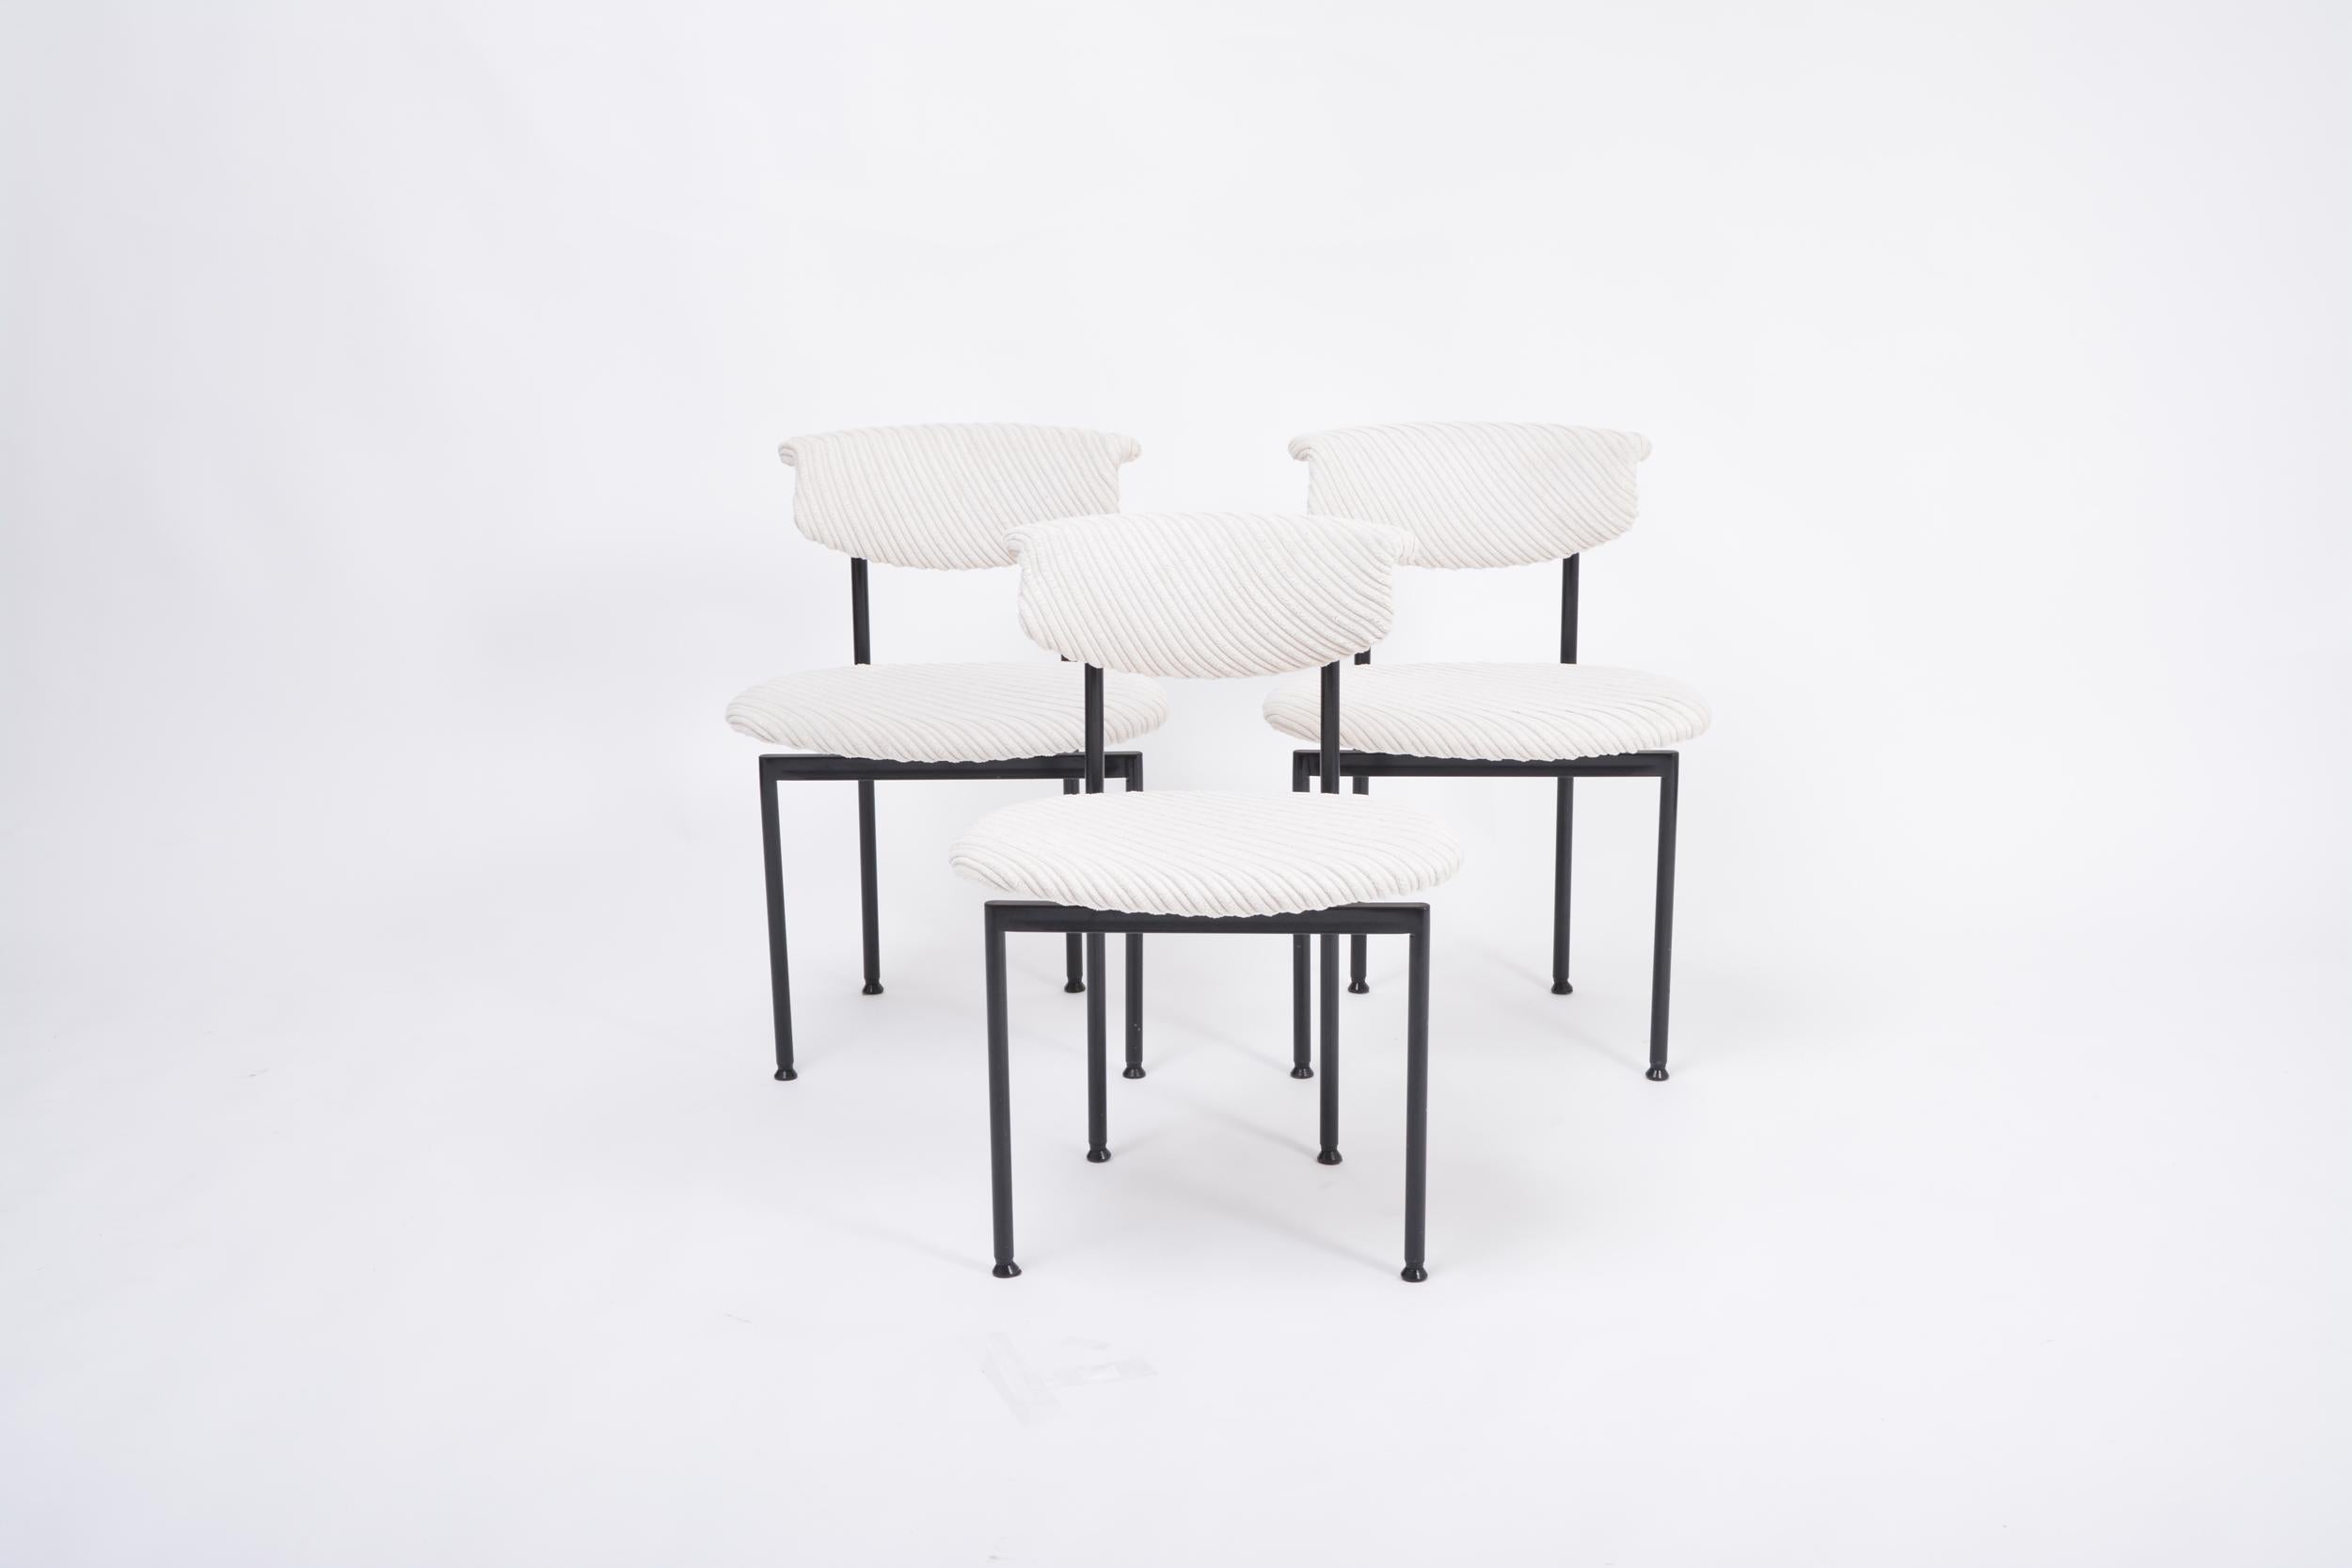 Satz von drei Esszimmerstühlen, Modell alpha aus der Serie Meander, entworfen von Rudolf Wolf. Hergestellt von Meander (Niederlande) in den 1960er Jahren. Schwarz lackierte Stahlstruktur. Die Stühle wurden mit einem weißen, strukturierten Stoff neu